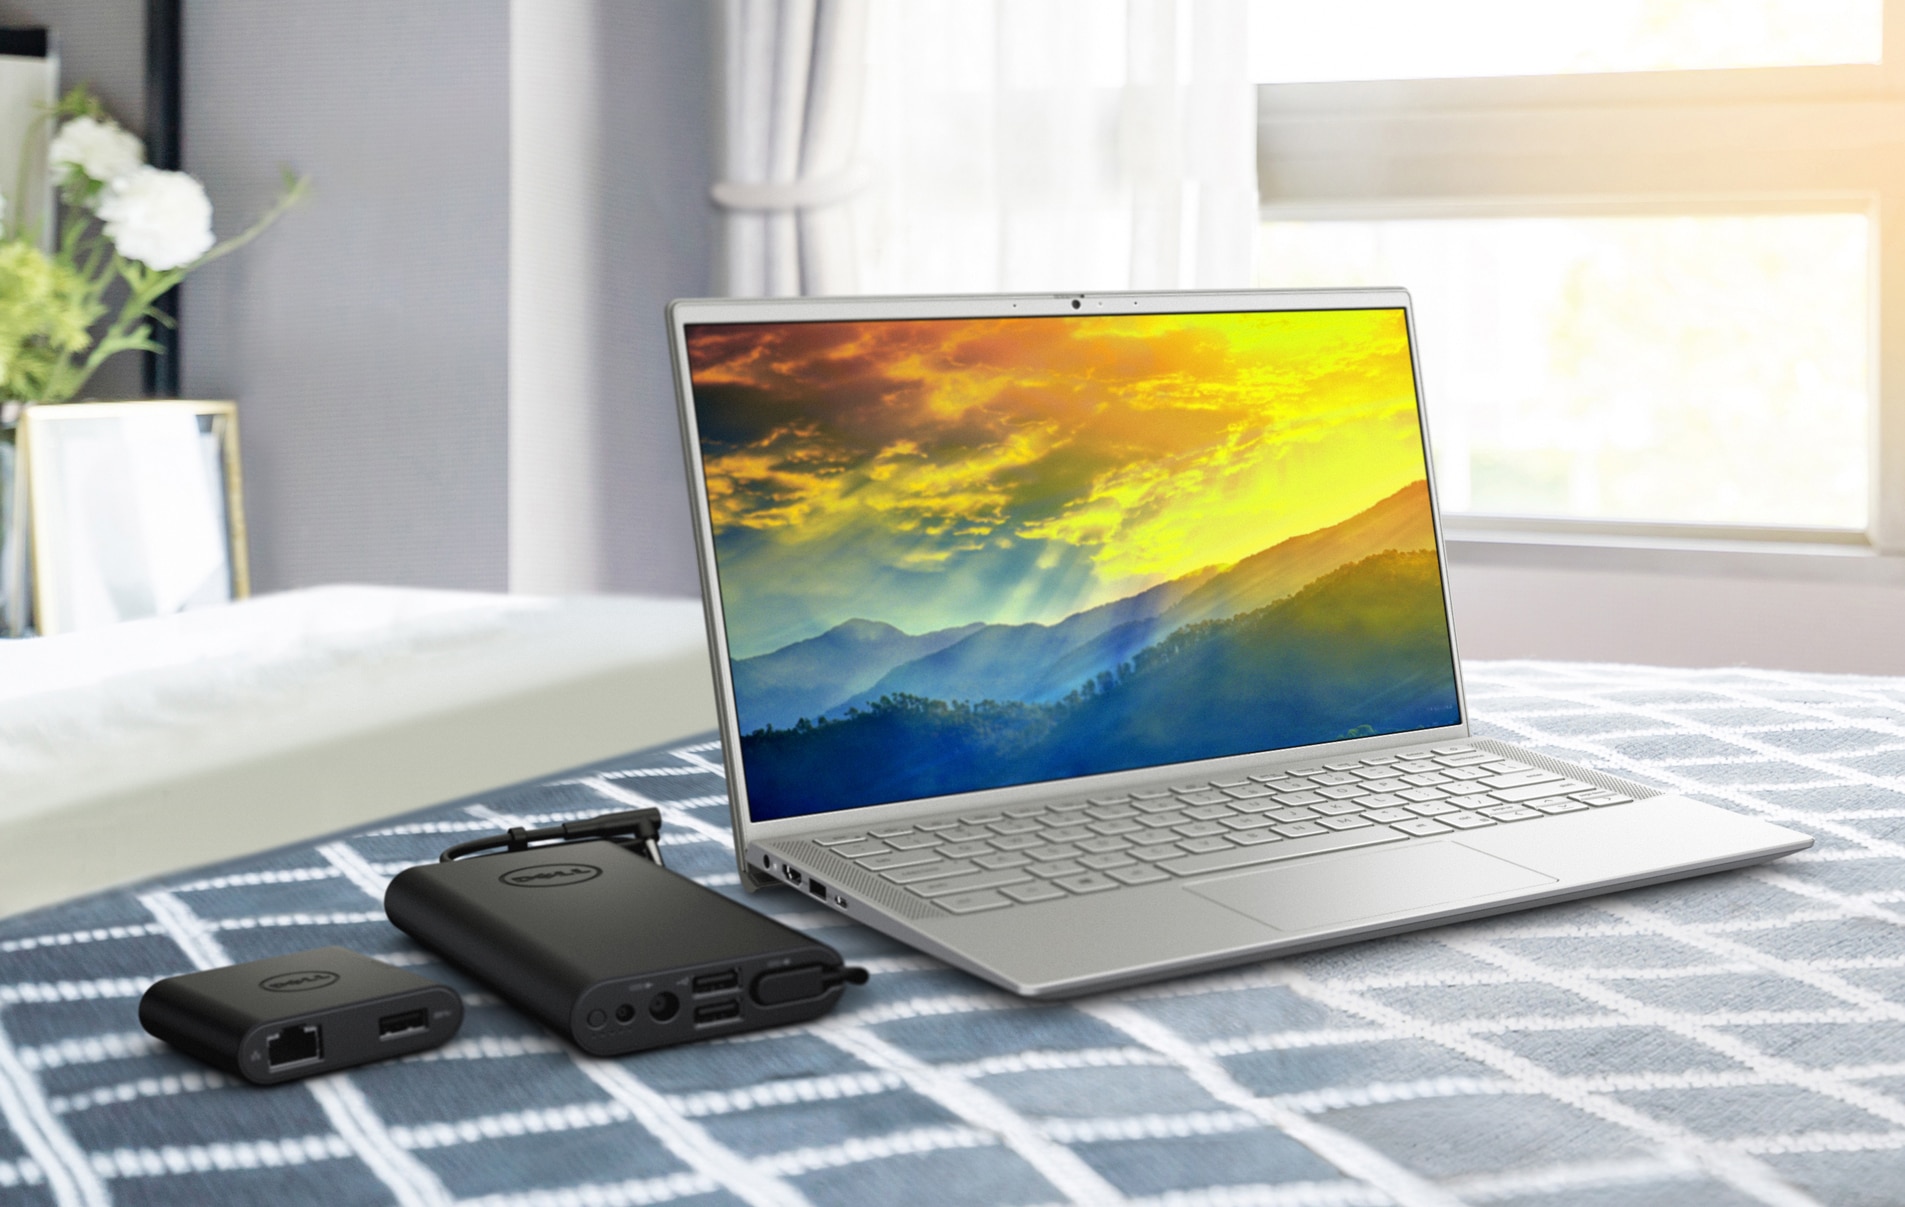 화려한 배경이 화면에 표시된 Dell 노트북과 제품 옆에 있는 배터리 충전기 사진.